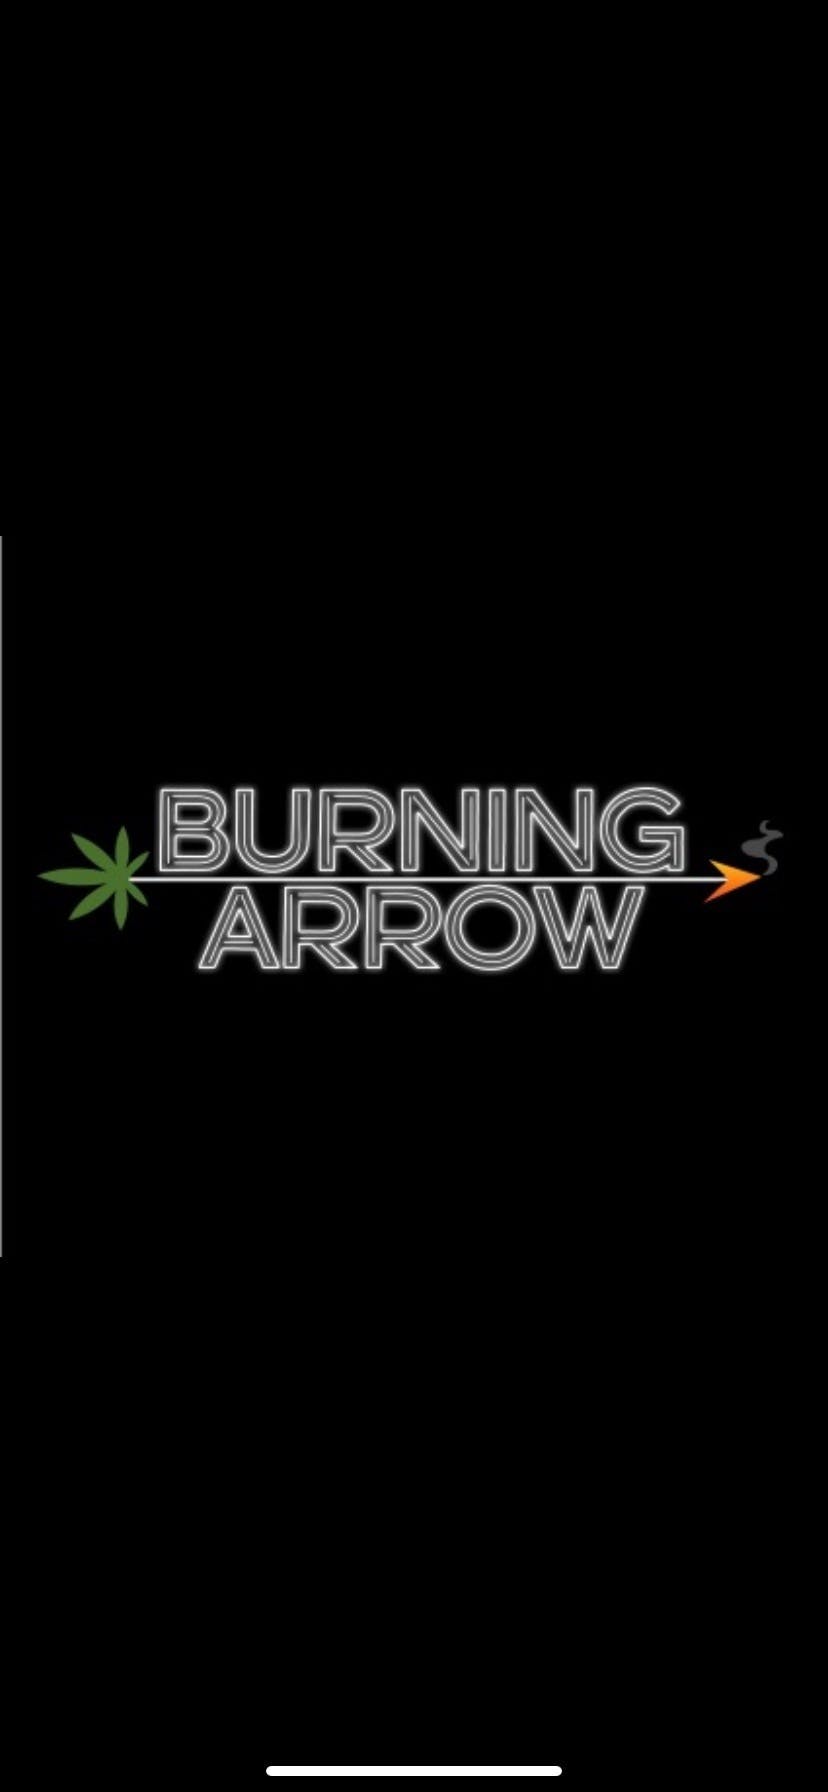 Burning Arrow logo